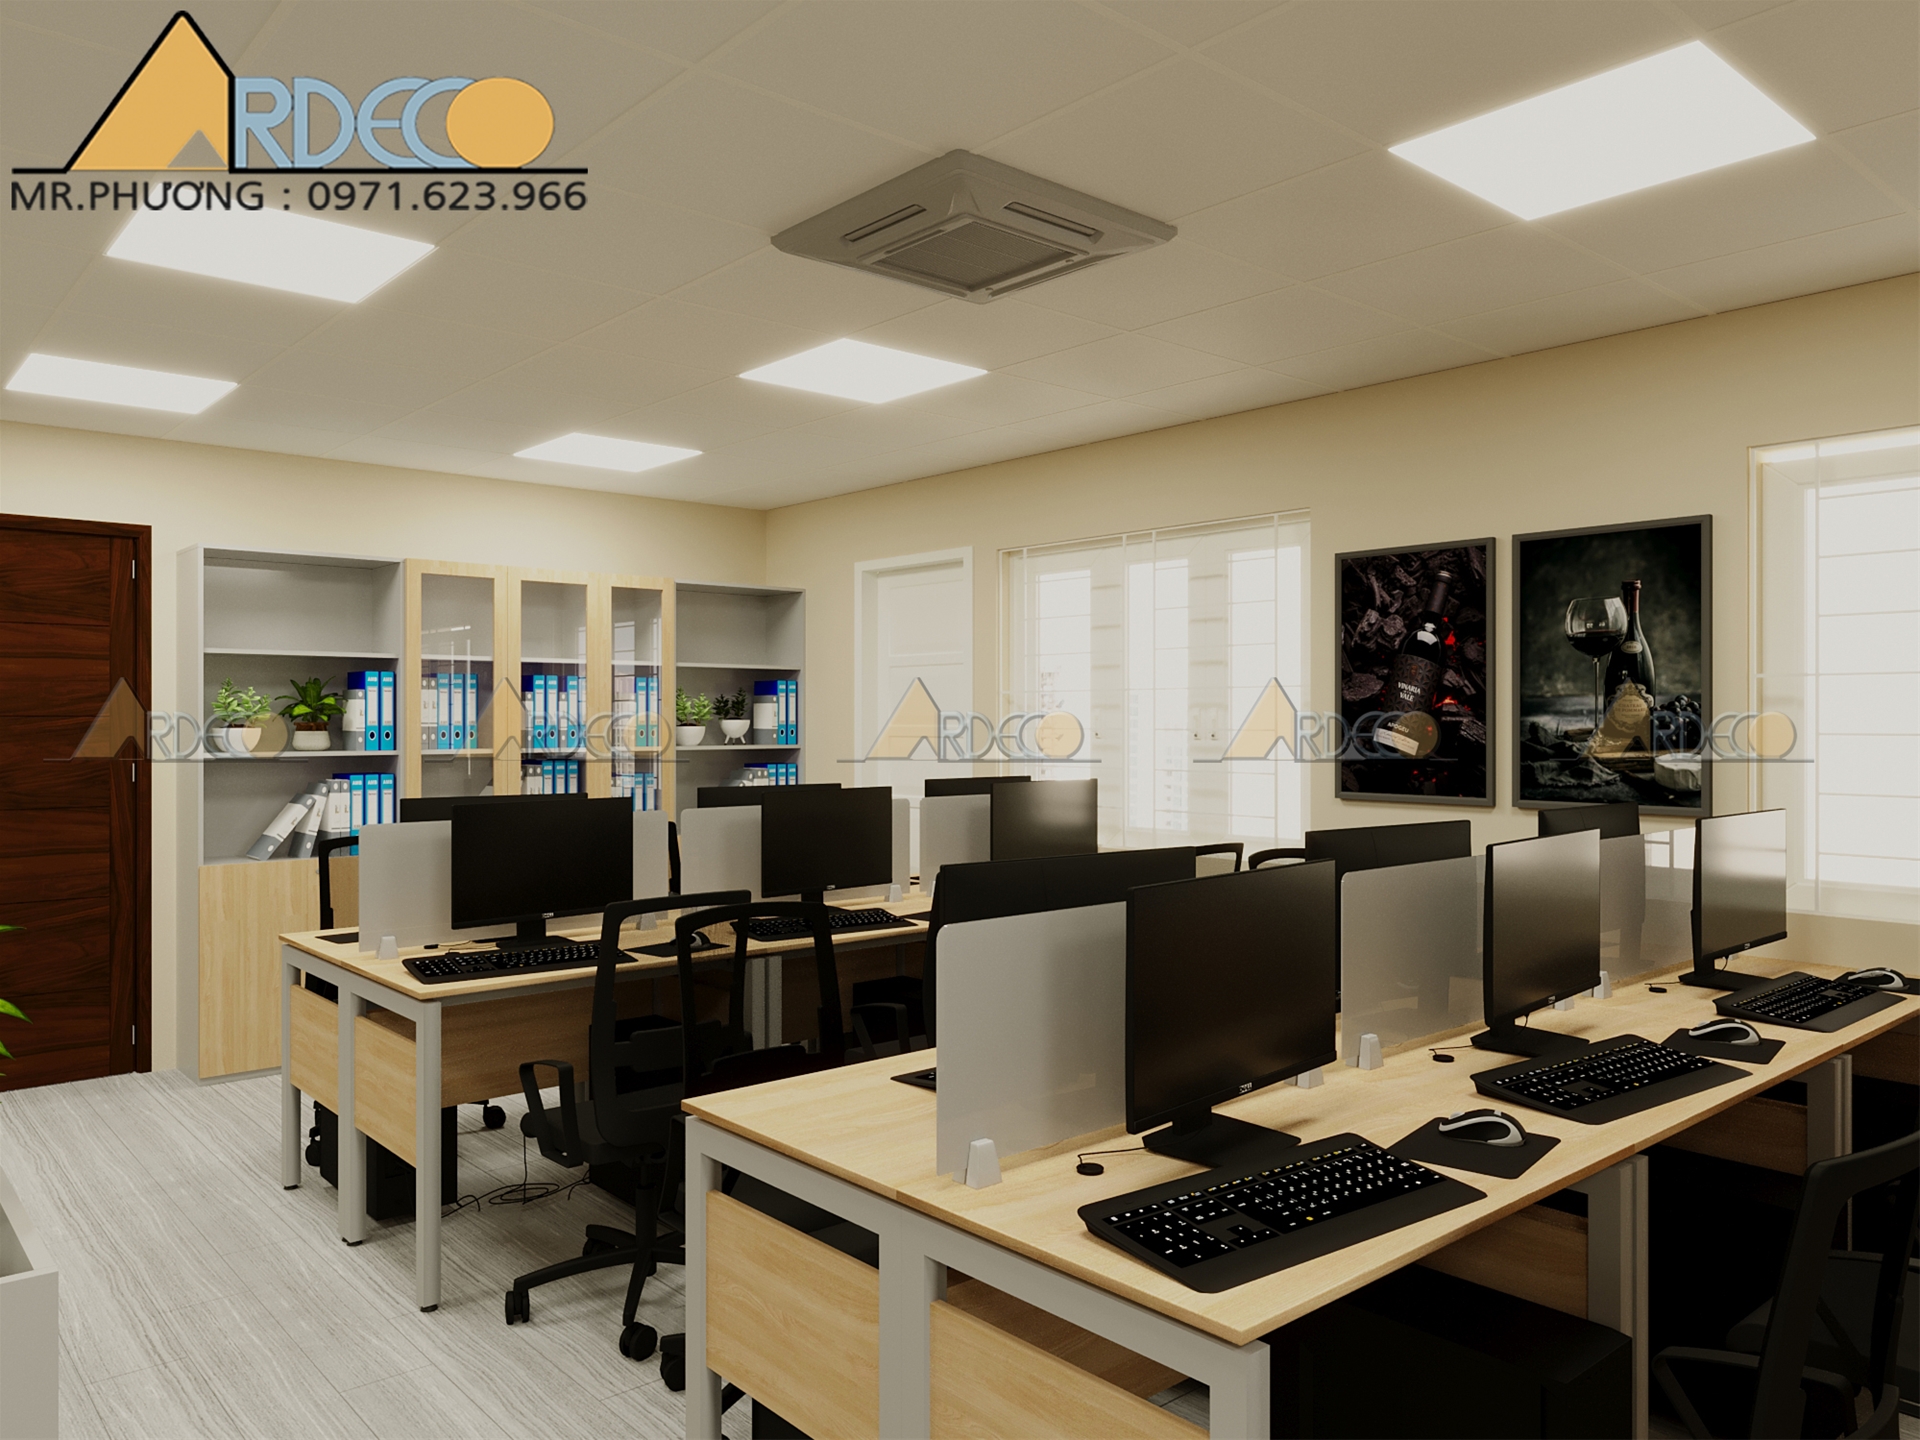 Đơn giá thiết kế thi công nội thất văn phòng Ardeco mới nhất